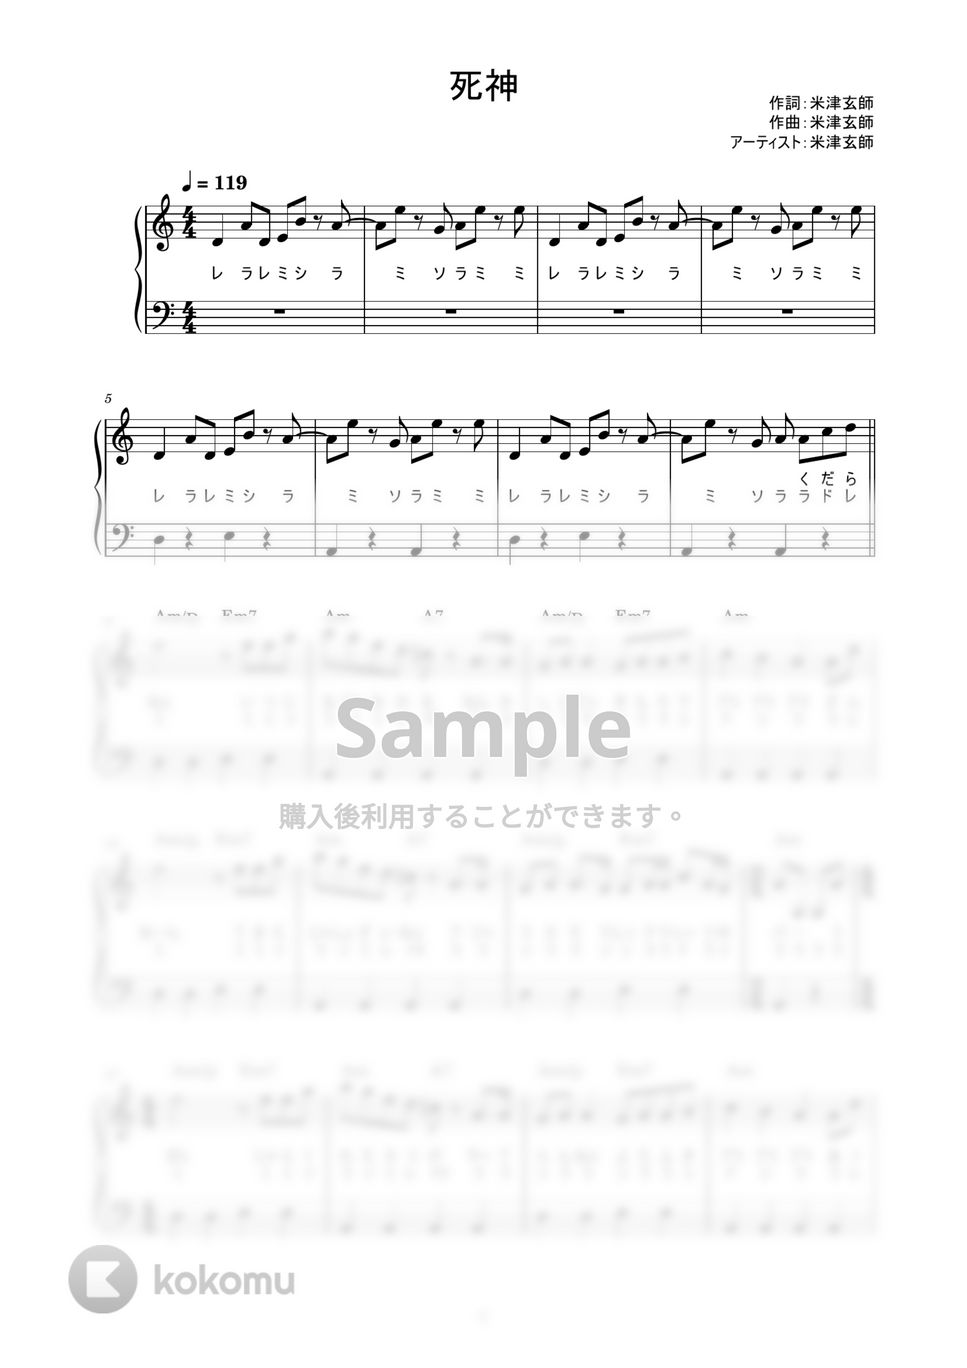 米津玄師 - 死神 (かんたん / 歌詞付き / ドレミ付き / 初心者) by piano.tokyo